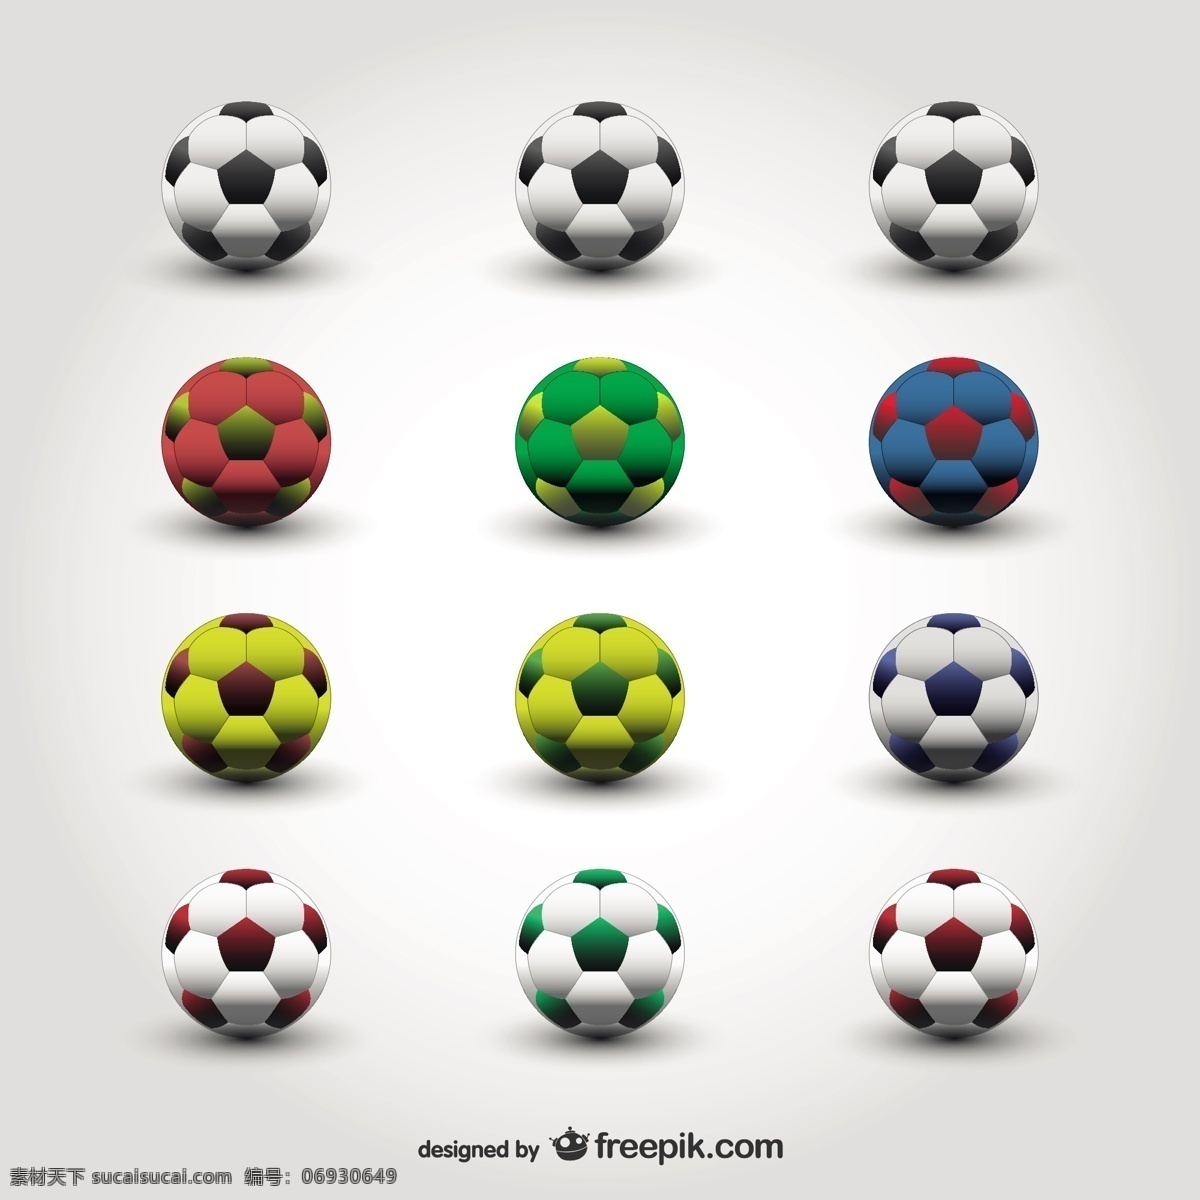 足球收藏 背景 标志 图标 足球 体育 世界 模板 标识 壁纸 图形 布局 游戏 图形设计 杯子 球 白色